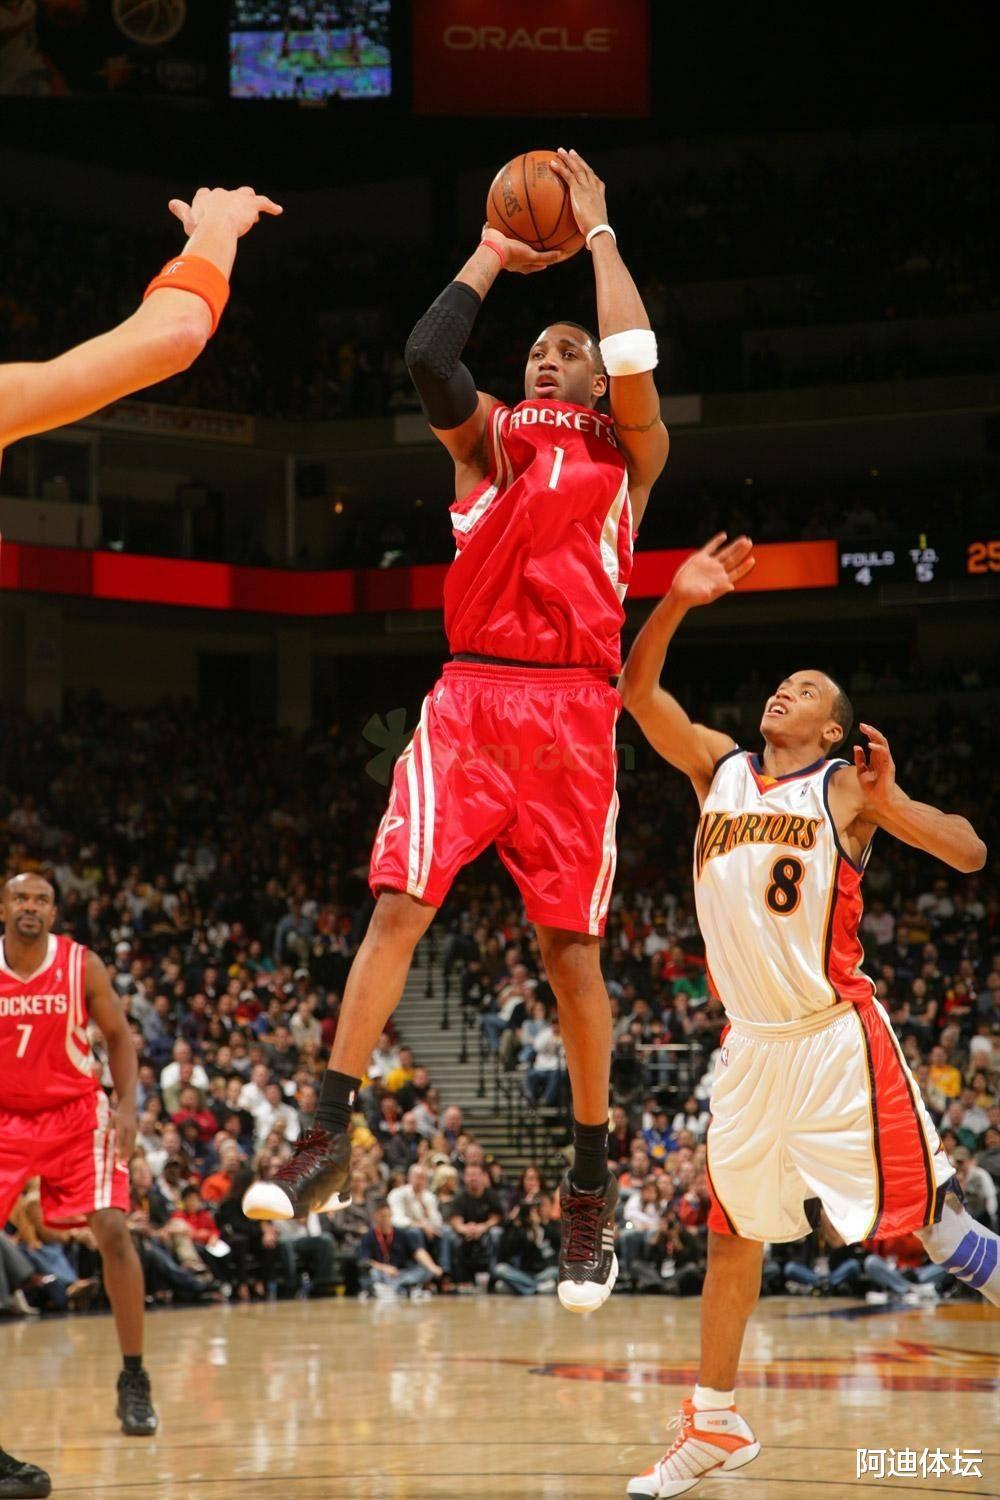 麦迪的跳投被称为“干拔”，为何NBA其他球员永远只是跳投？(3)